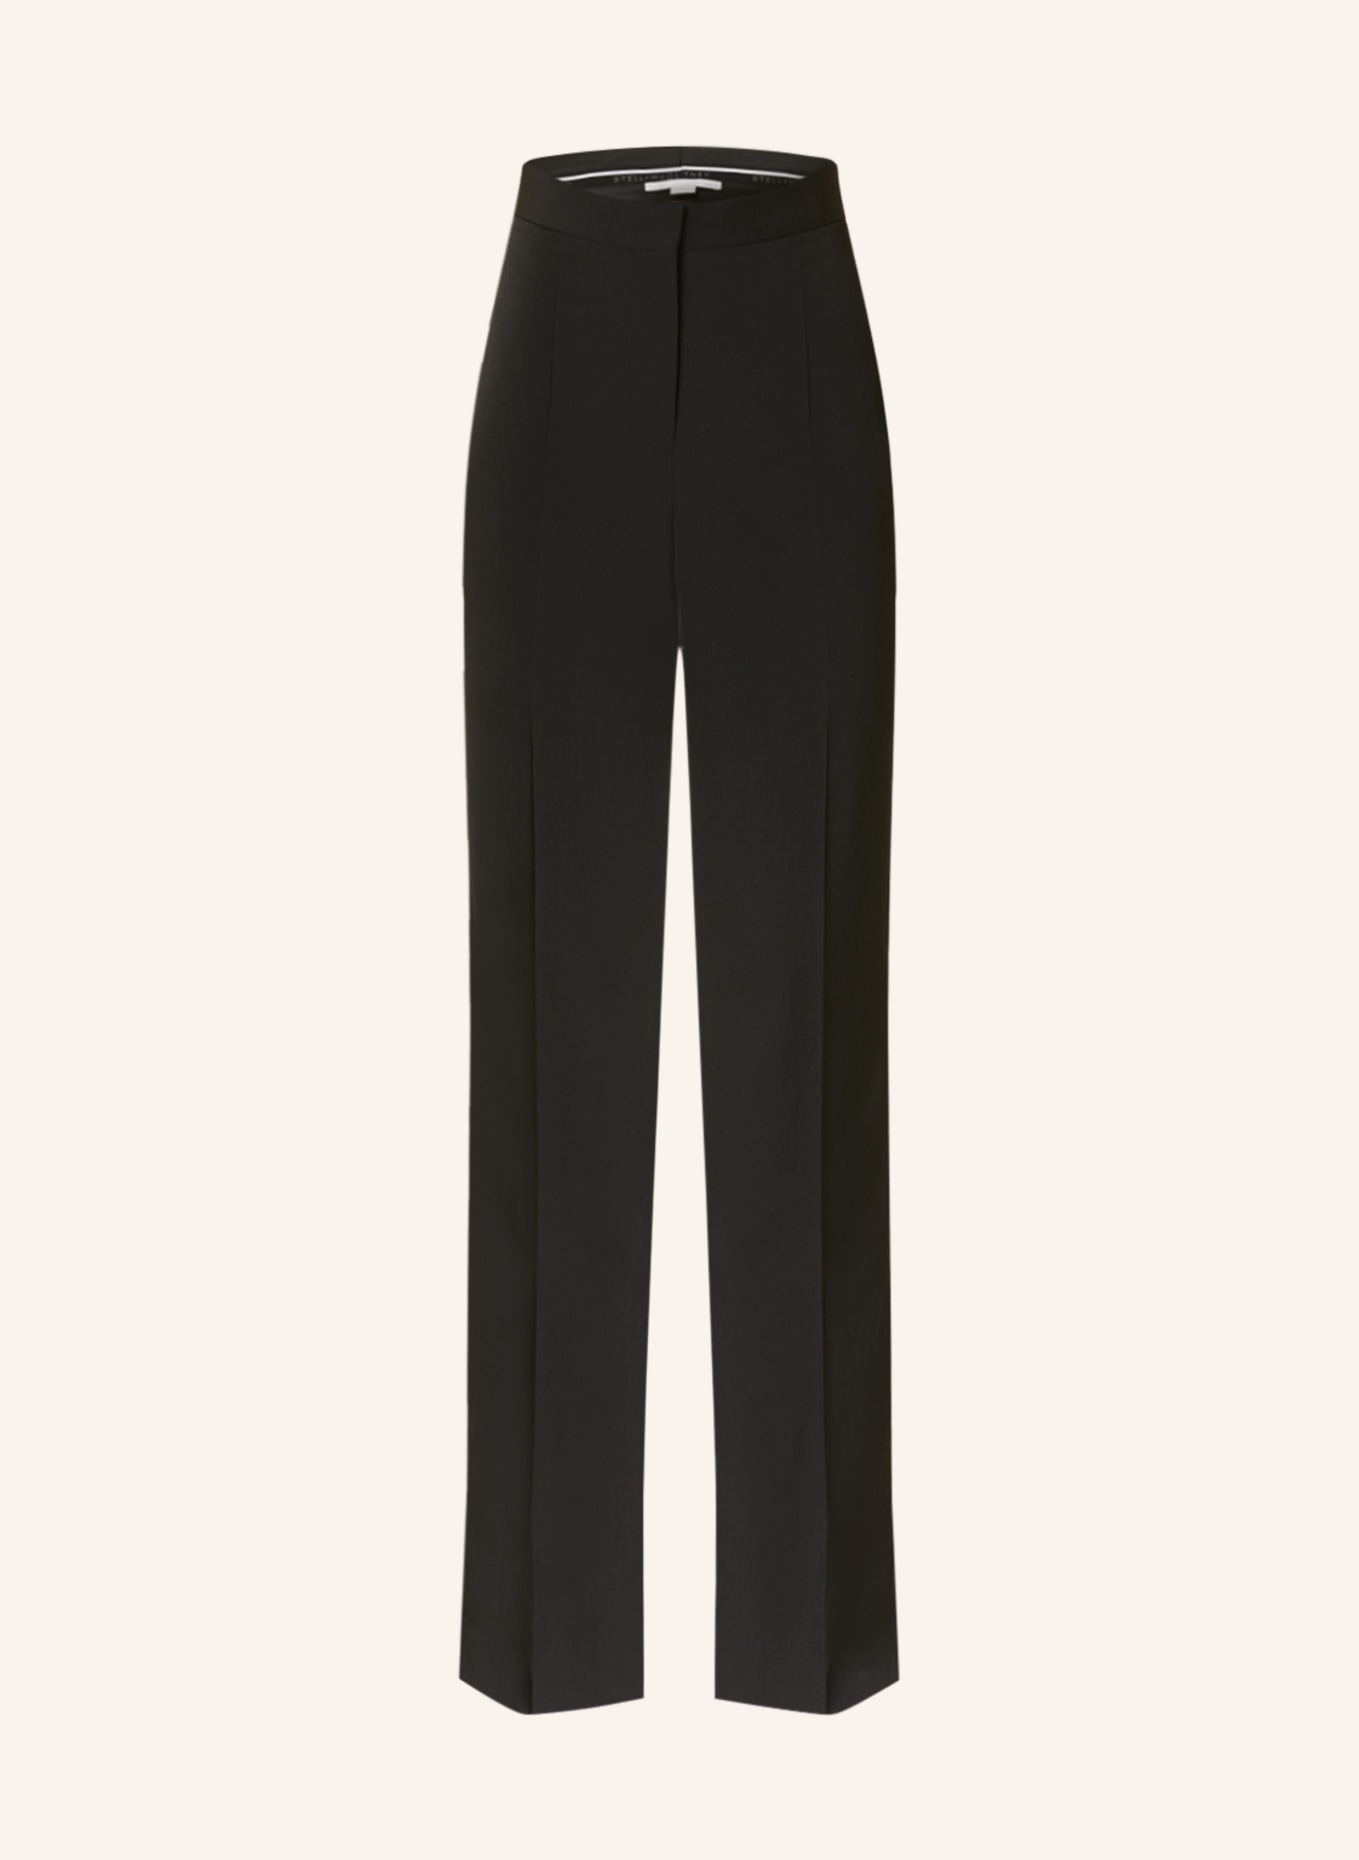 Stella McCartney Women Wide Leg Trousers Wool Zip Pocket Pants Gray Size 42  | eBay